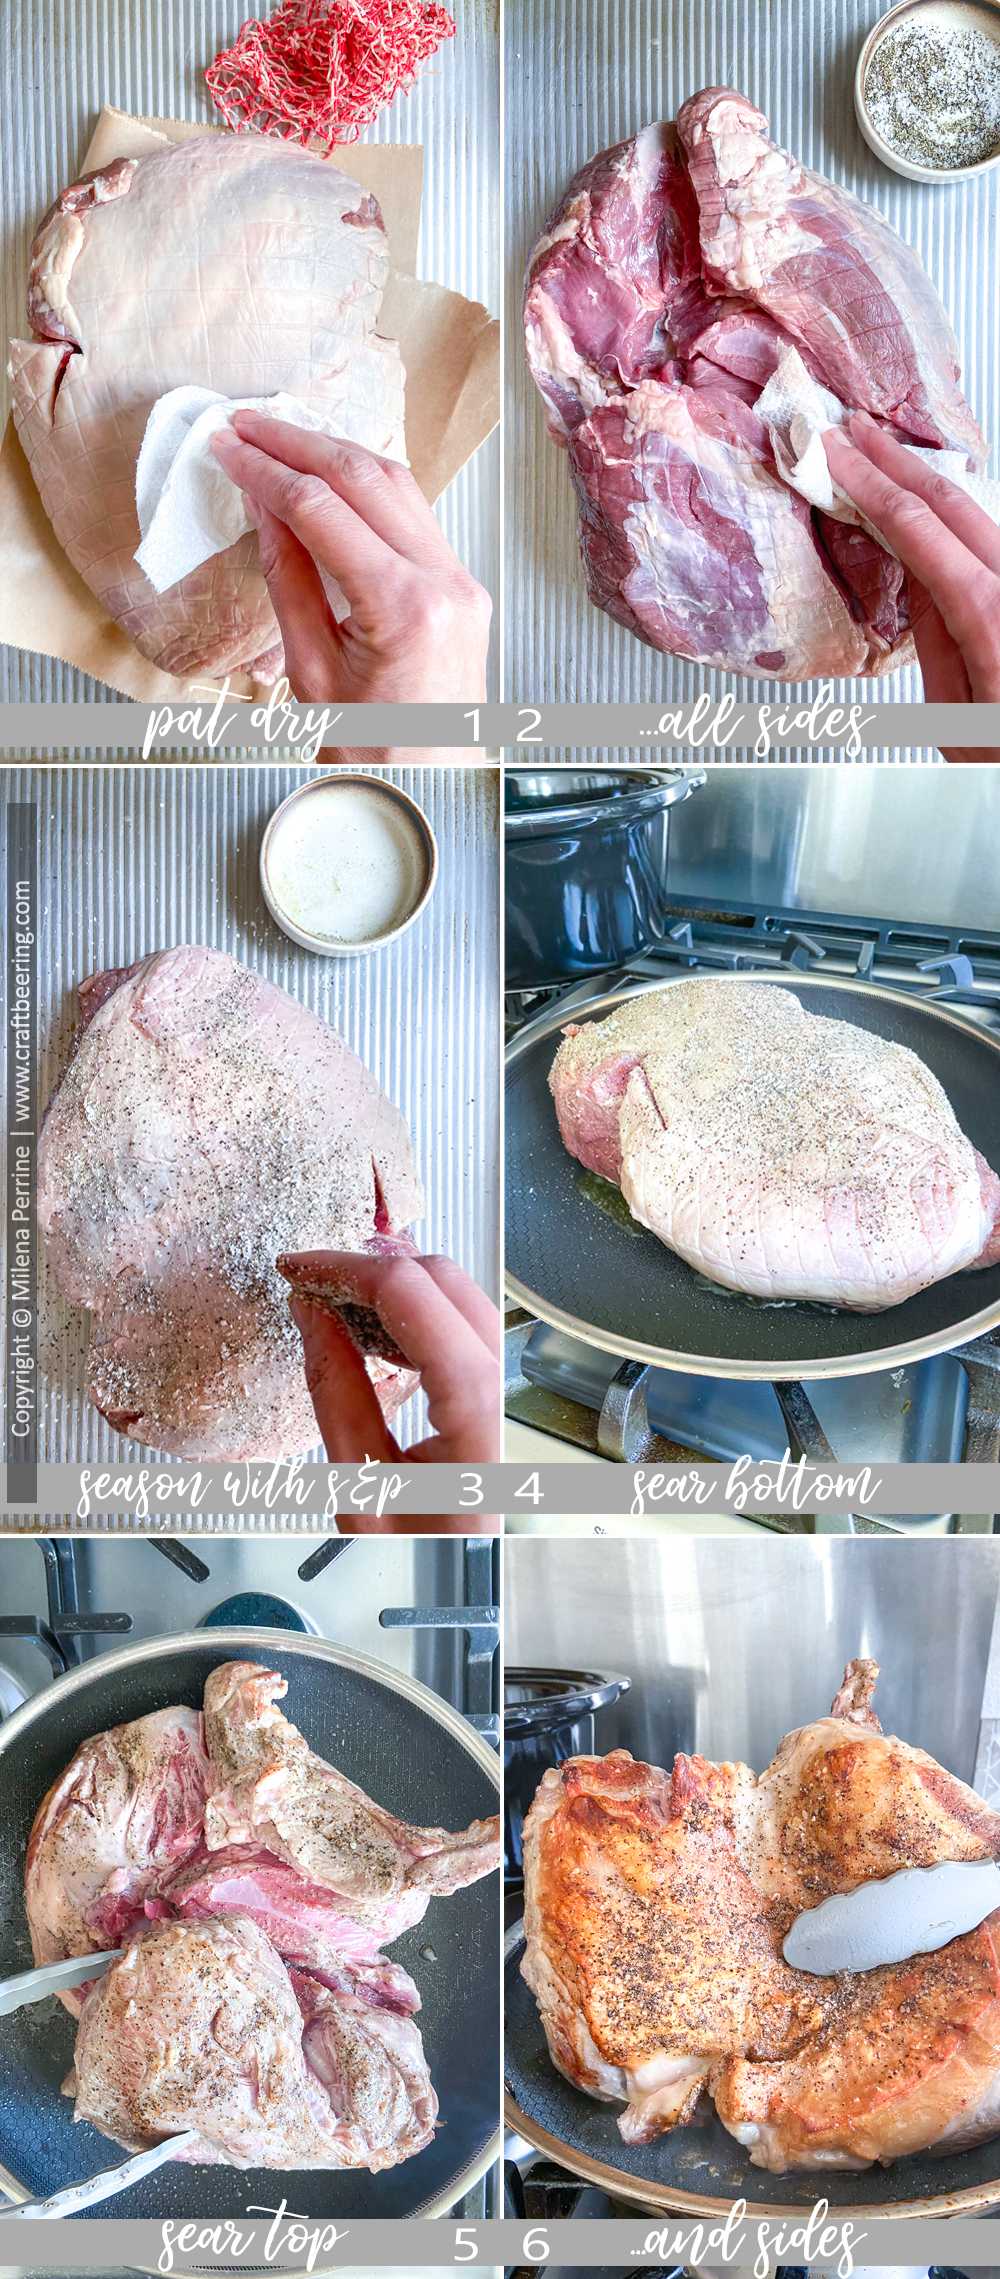 Prepare leg of lamb for braising.